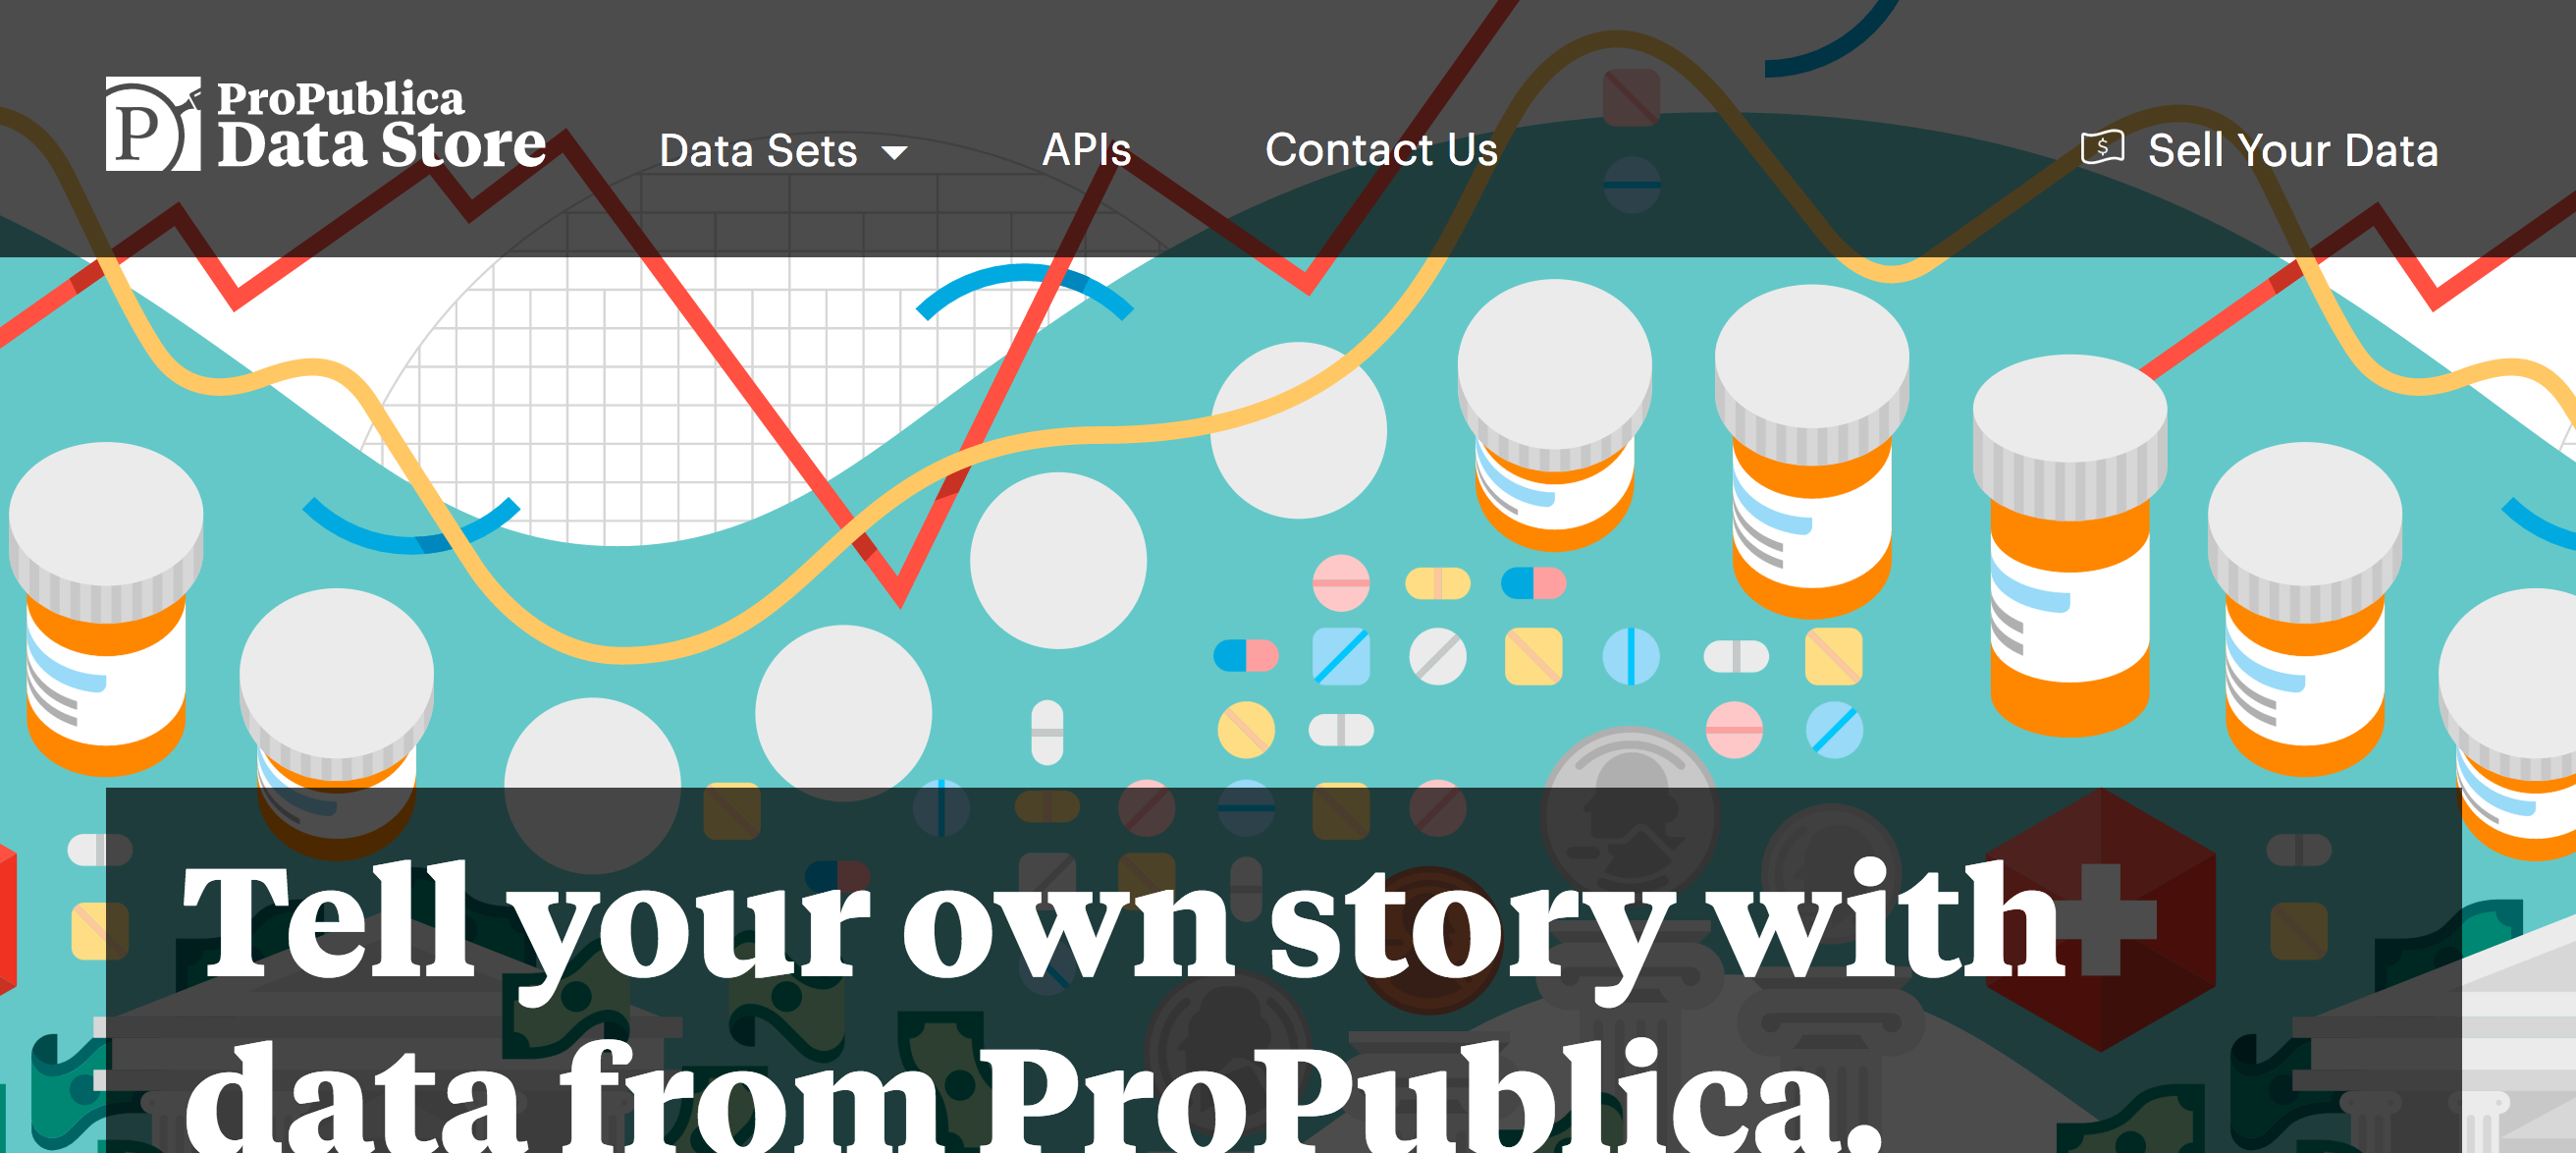 ProPublica Data Store